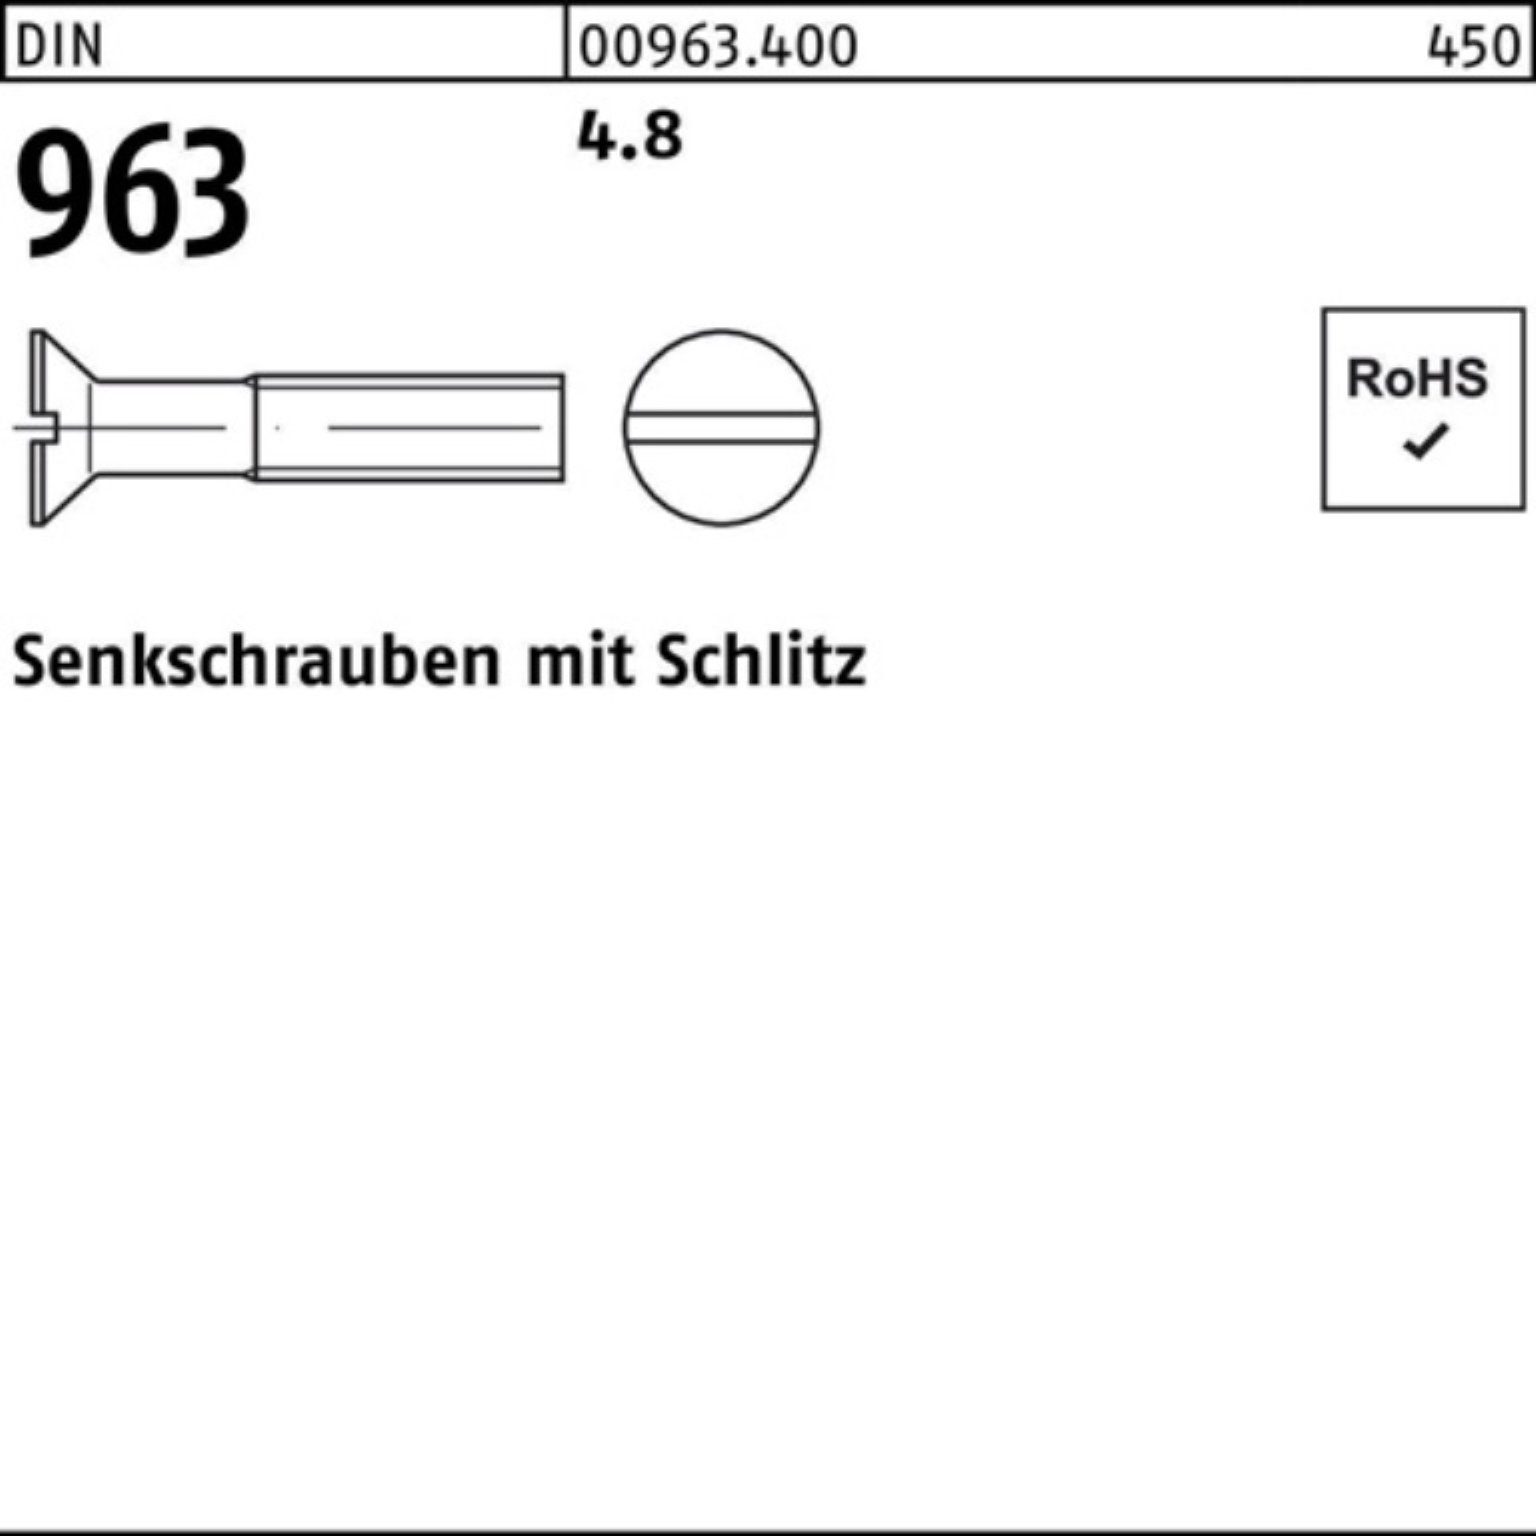 Pack 963 963 Stück 2000 Schlitz 4.8 M5x 6 DIN 2000er Reyher DIN Senkschraube Senkschraube